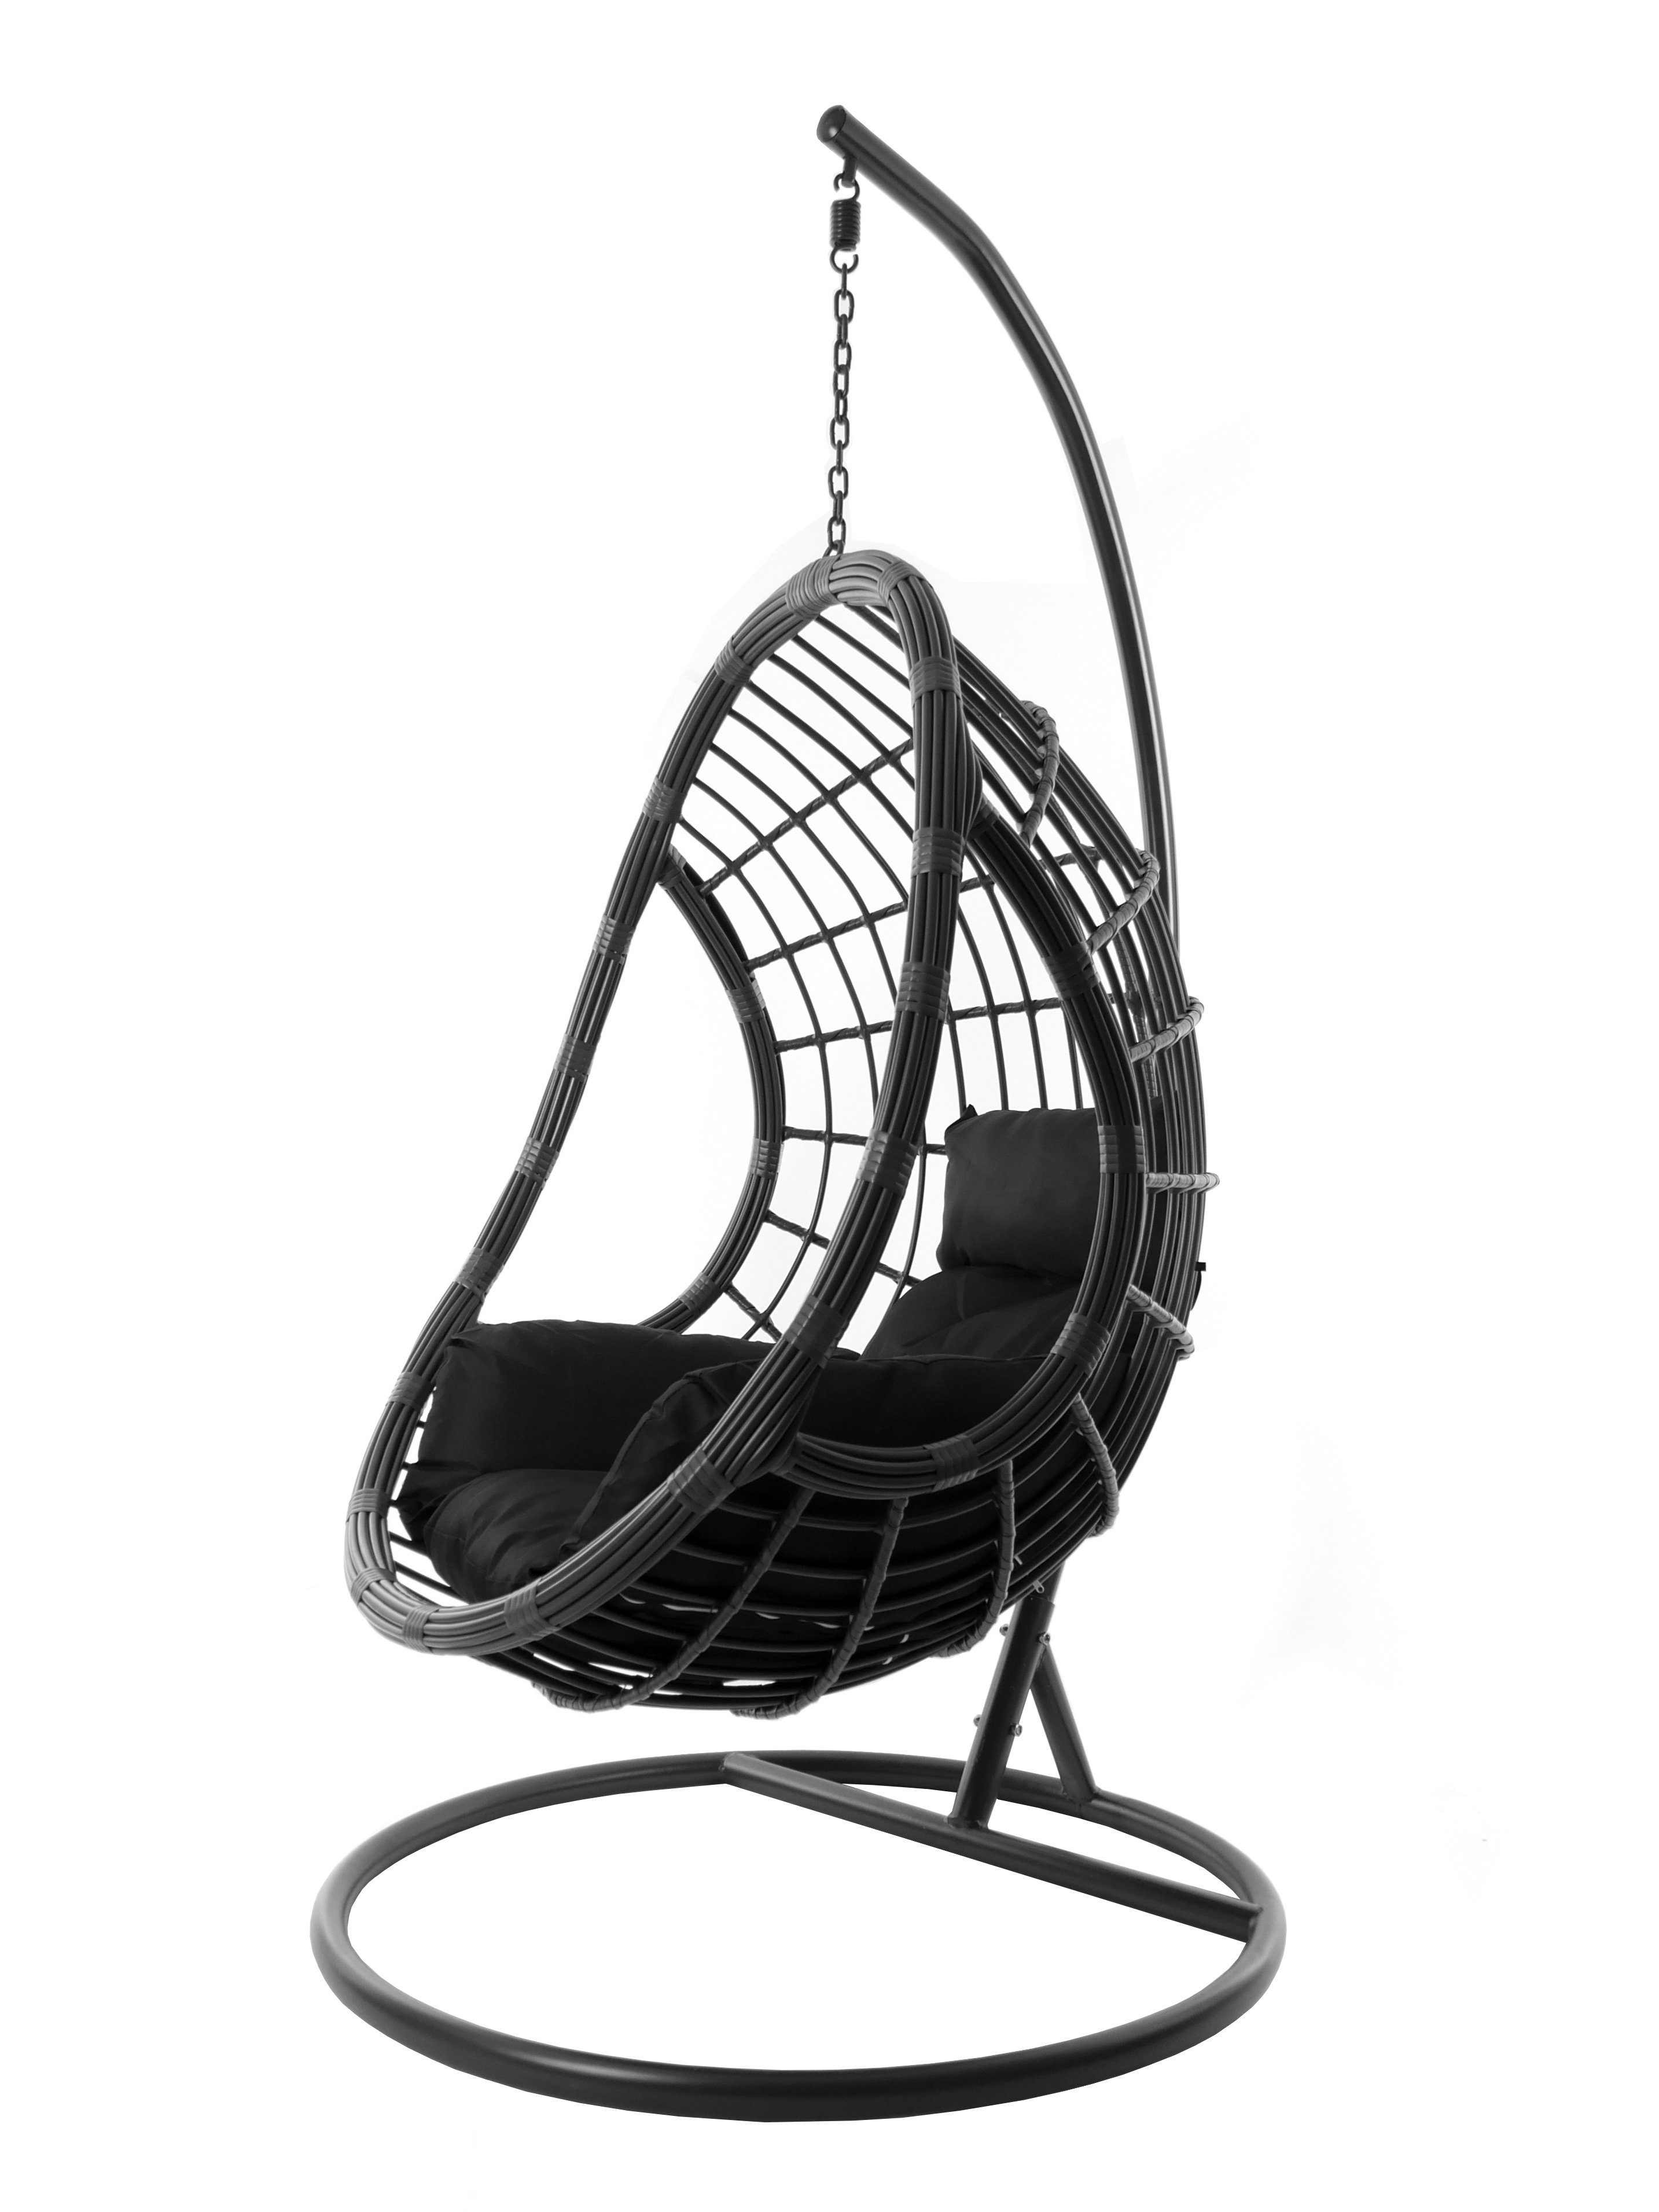 grau, in Hängesessel Loungemöbel PALMANOVA farbige (9999 mit Hängesessel Nest-Kissen black) grau, Kissen, schwarz Hängestuhl und moderne KIDEO Gestell